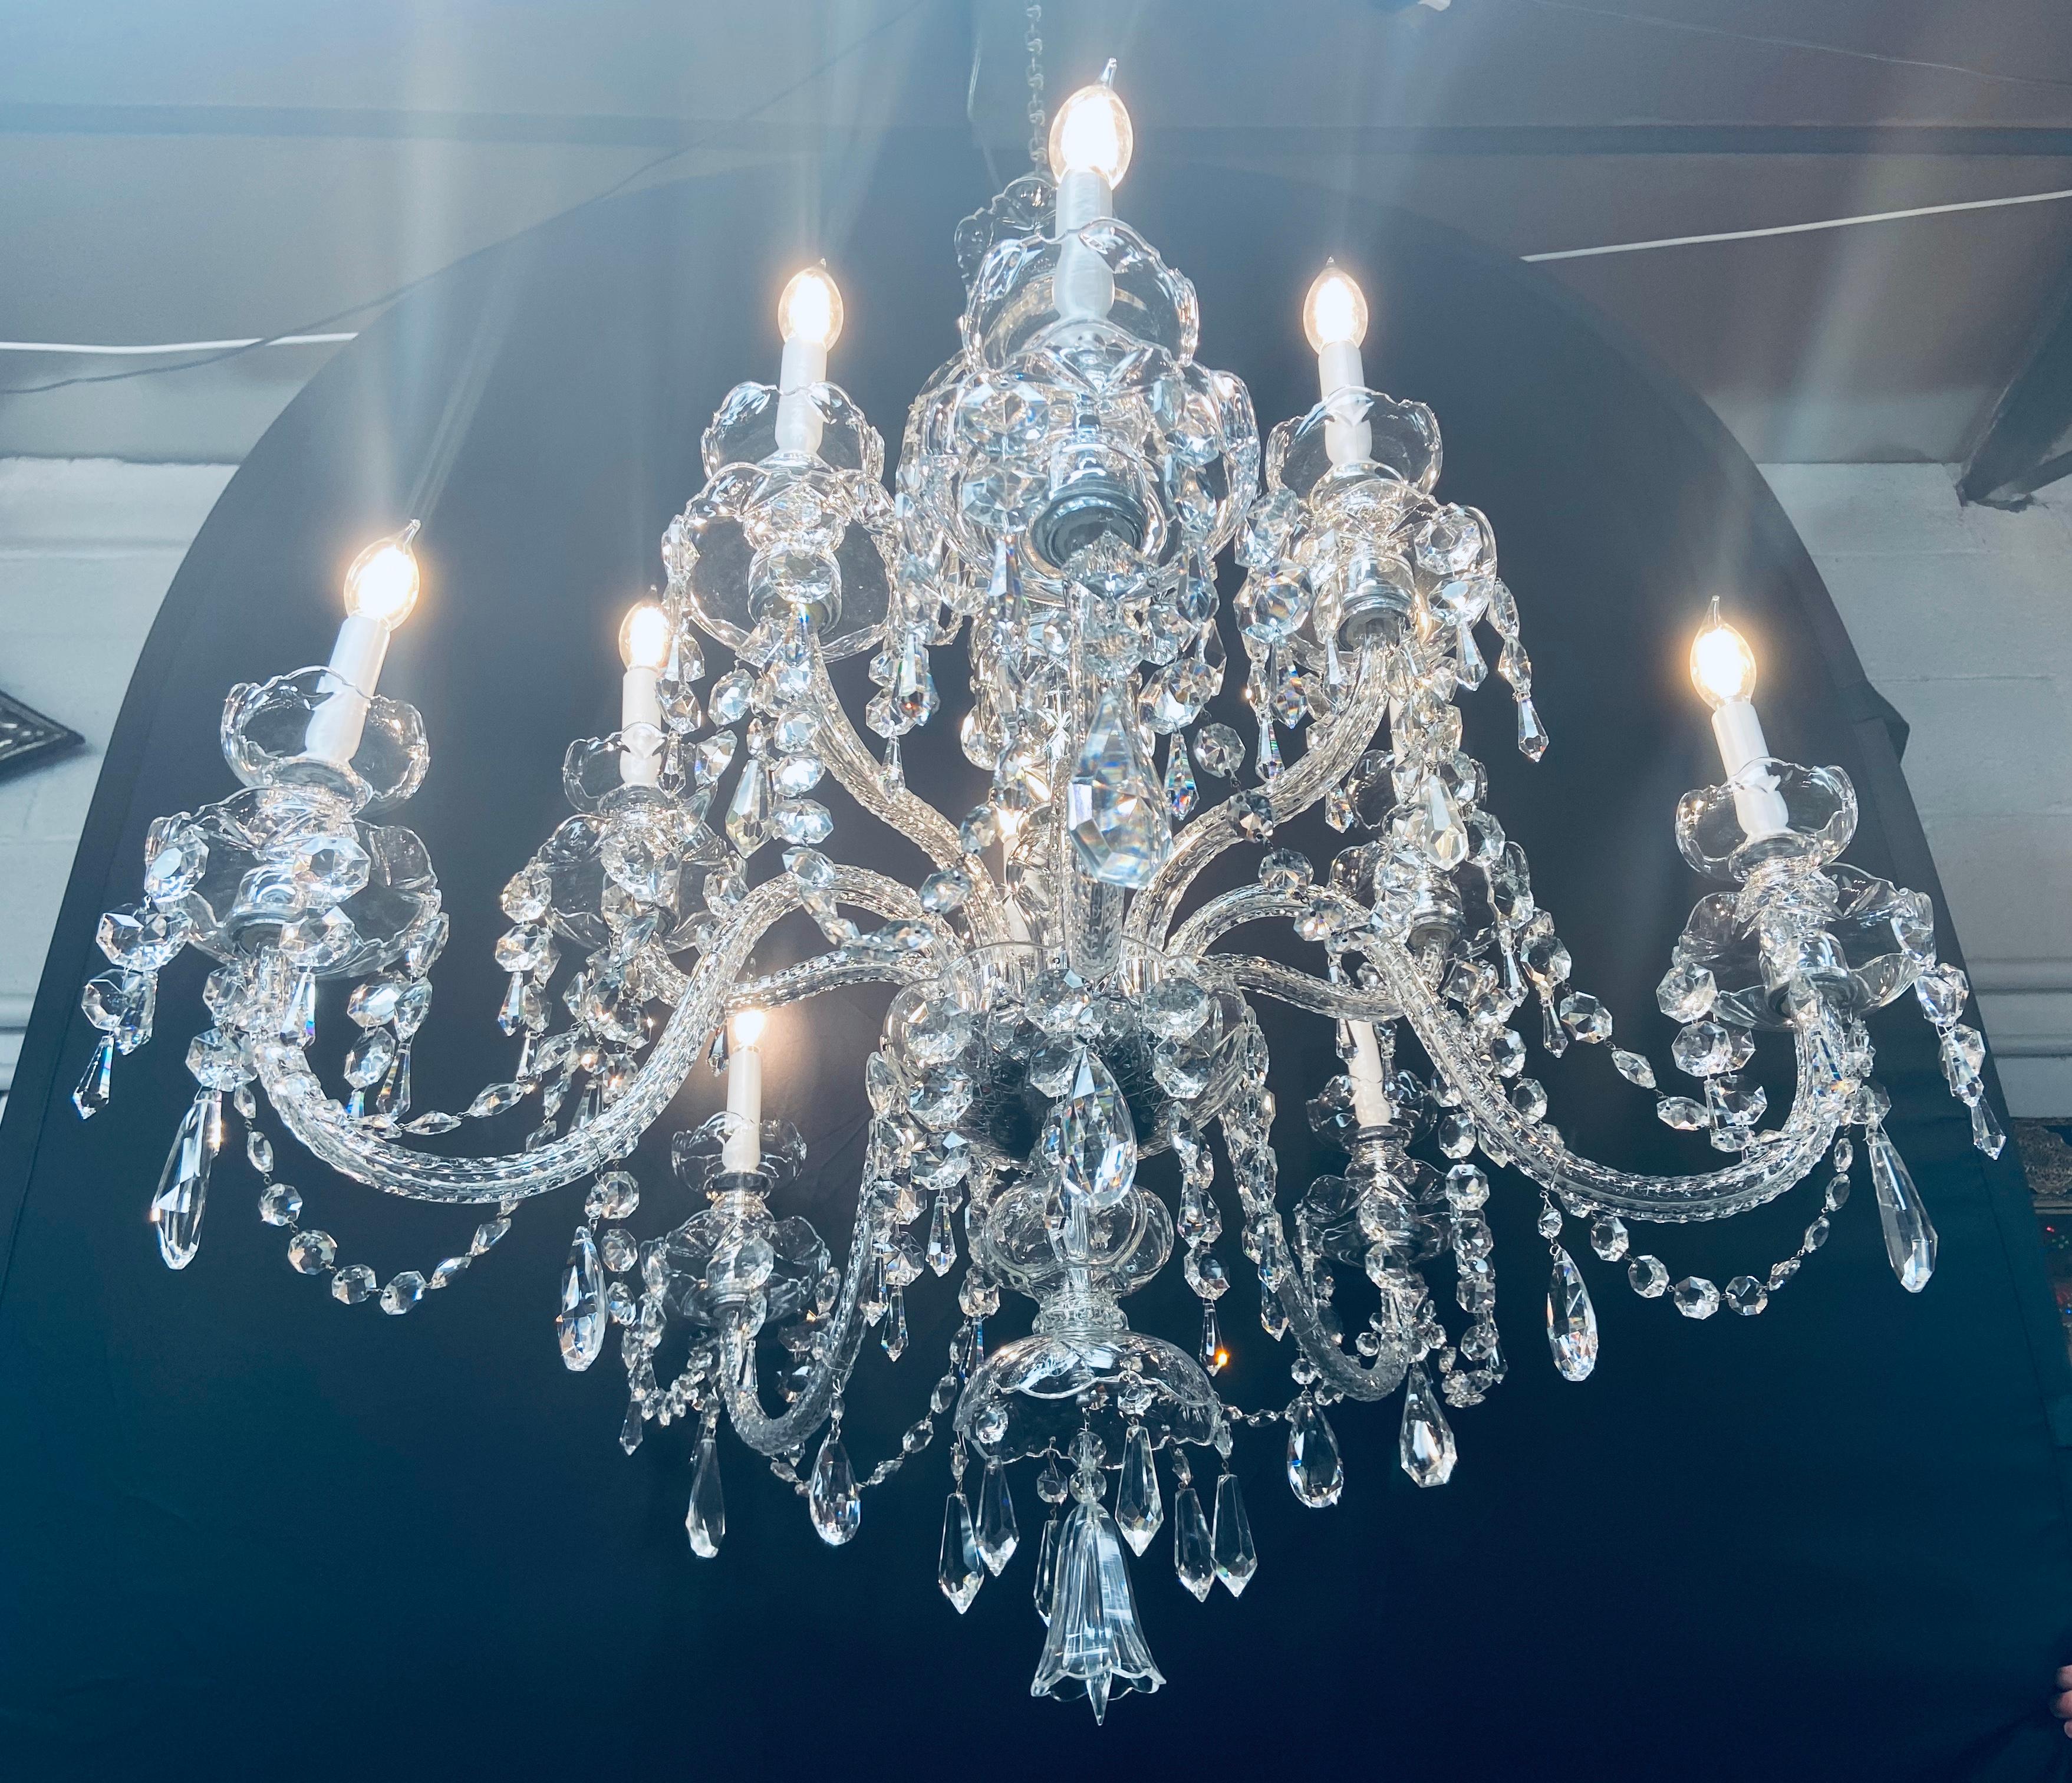 Un magnifique lustre en cristal de grande taille à la manière de Waterford. Le lustre comporte 10 bras et accepte 10 ampoules candélabres. Les prismes de cristal finement taillés sont suspendus à un double goutte-à-goutte en forme de bobèche. Ce